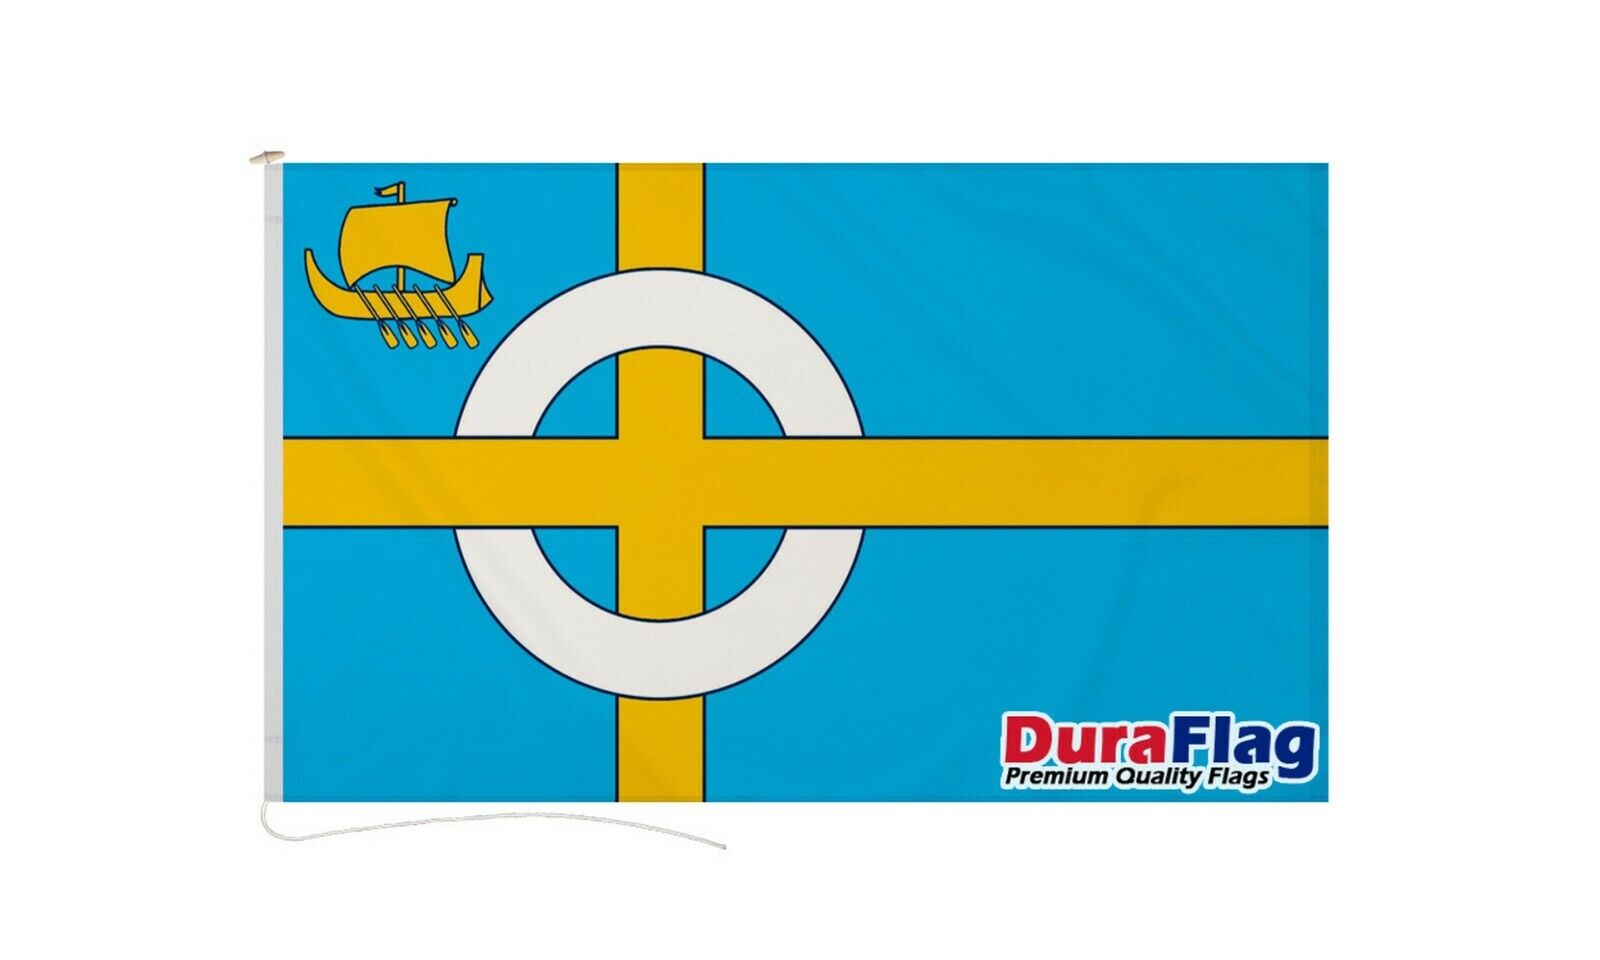 ISLE OF SKYE DURAFLAG 150cm x 90cm 5x3 FEET HIGH QUALITY FLAG ROPE & TOGGLE